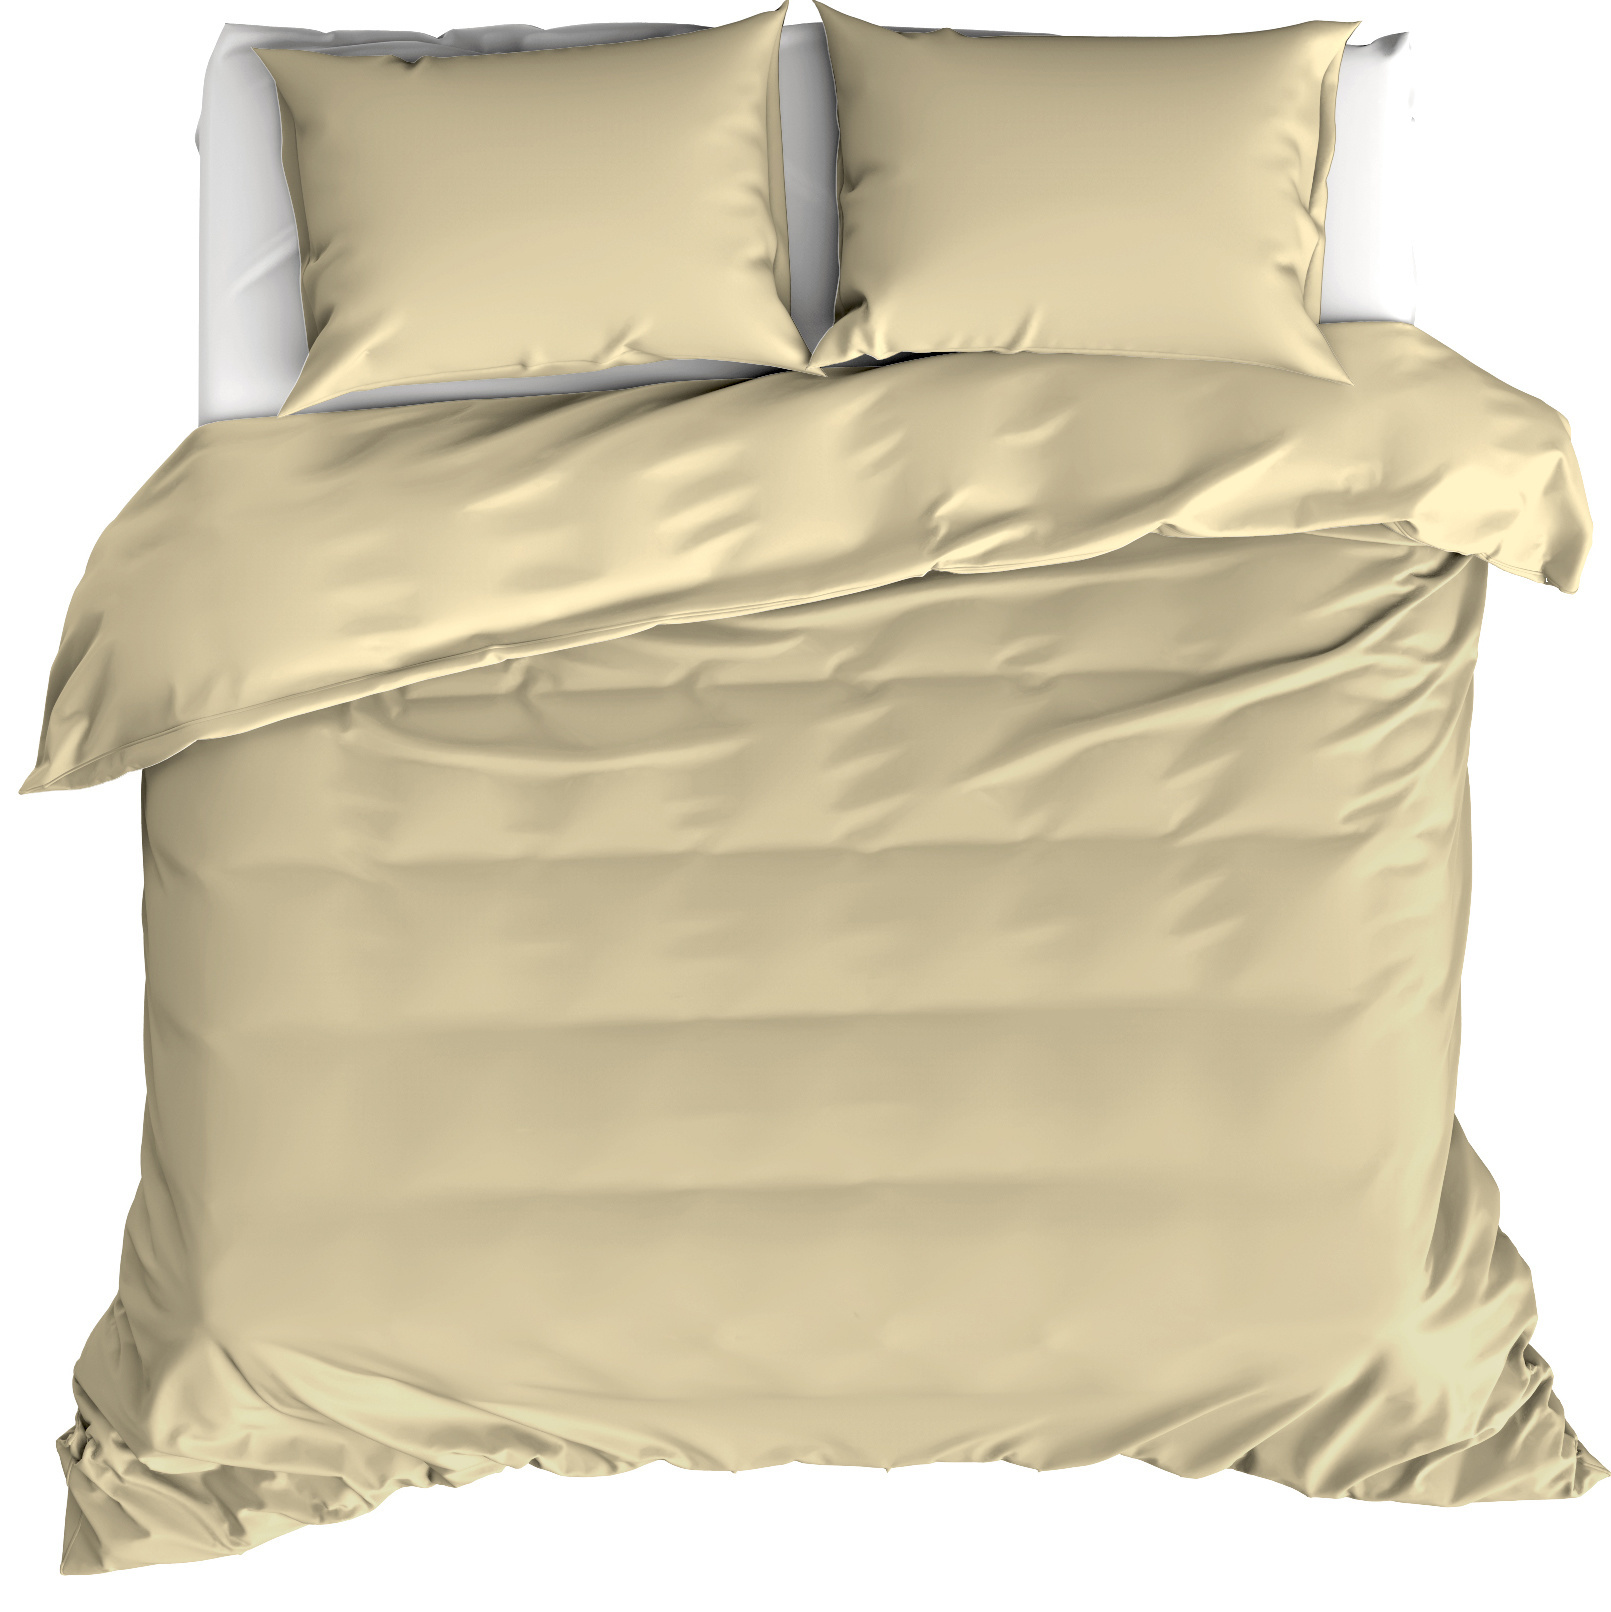 Moodit Duvet cover Basil Sand - Hotel size - 260 x 240 cm - Cotton